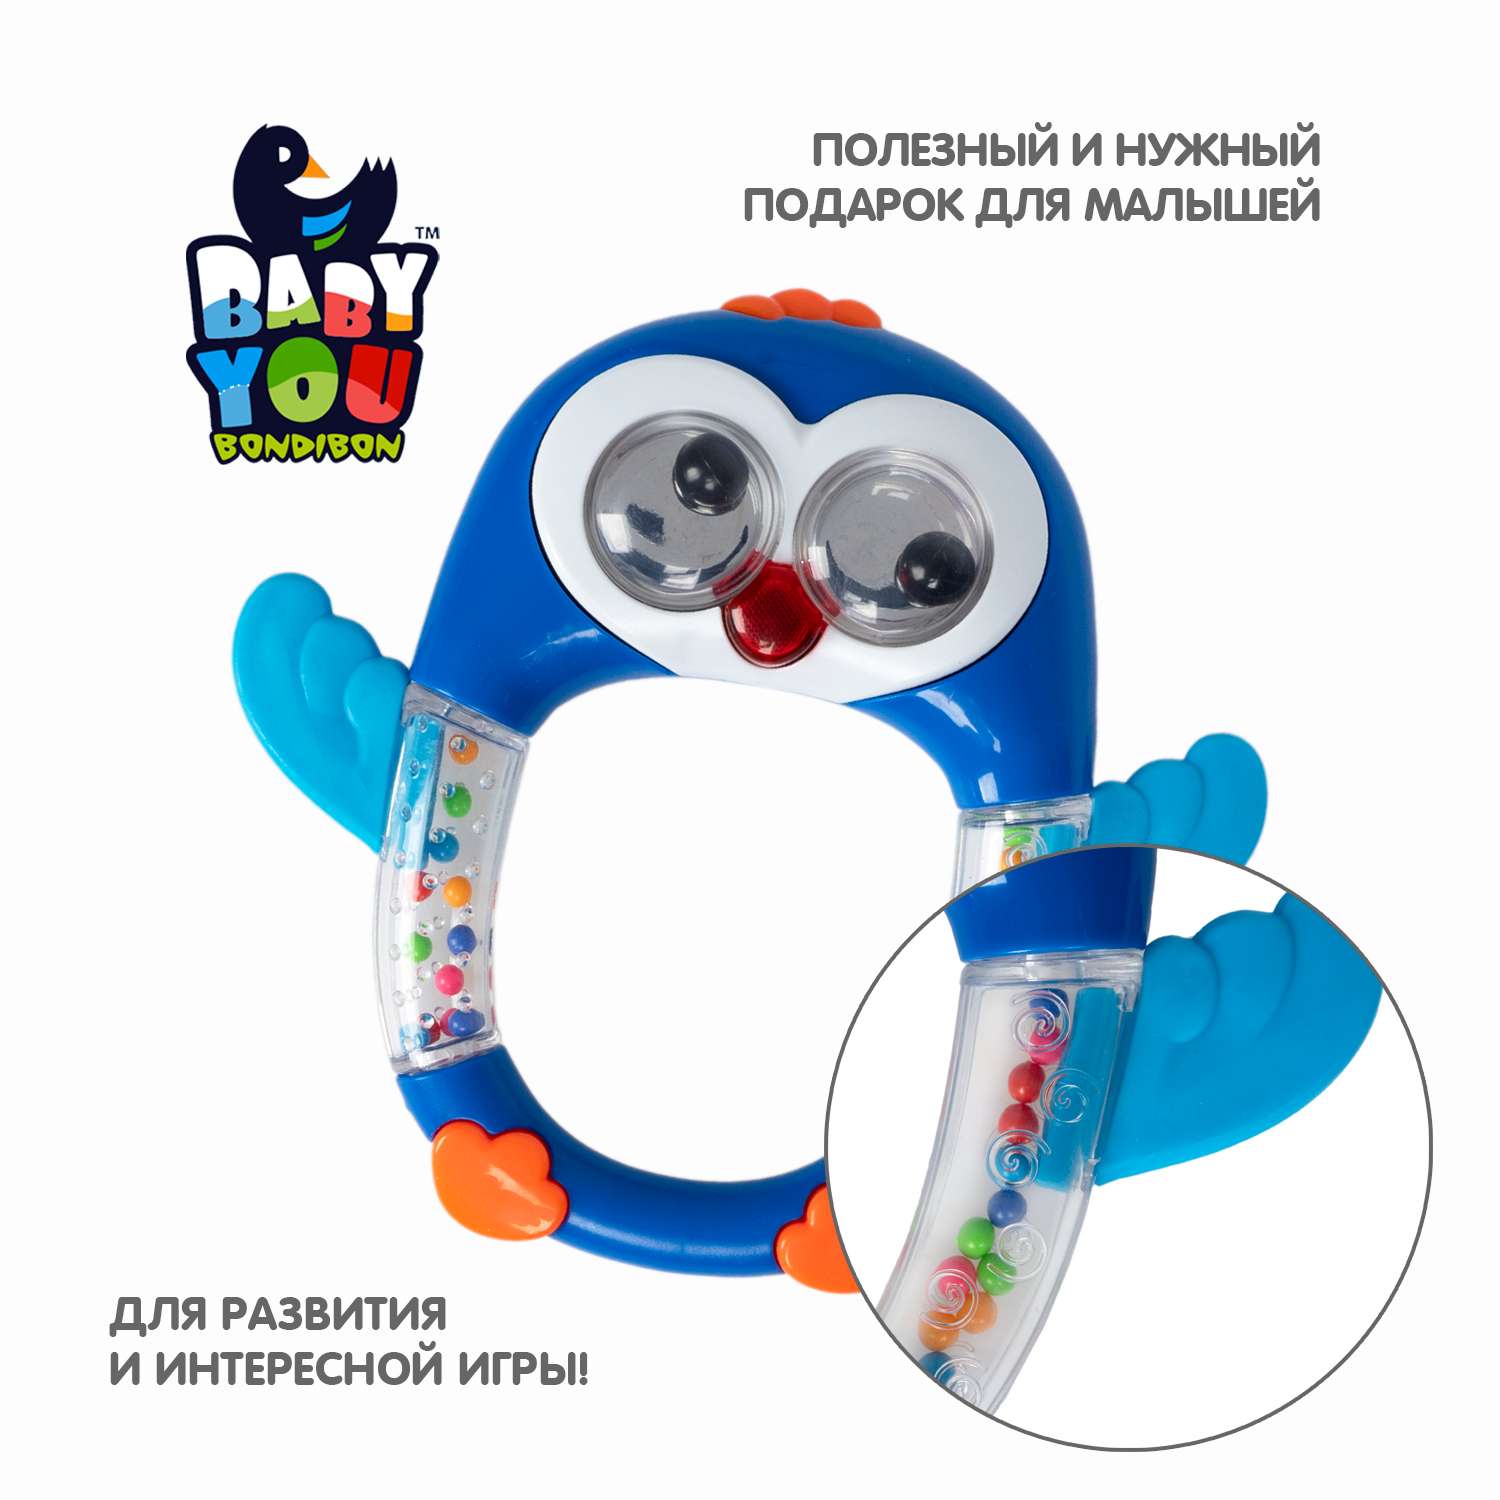 Музыкальная погремушка BONDIBON Пингвин с прорезывателями серия Baby You - фото 8